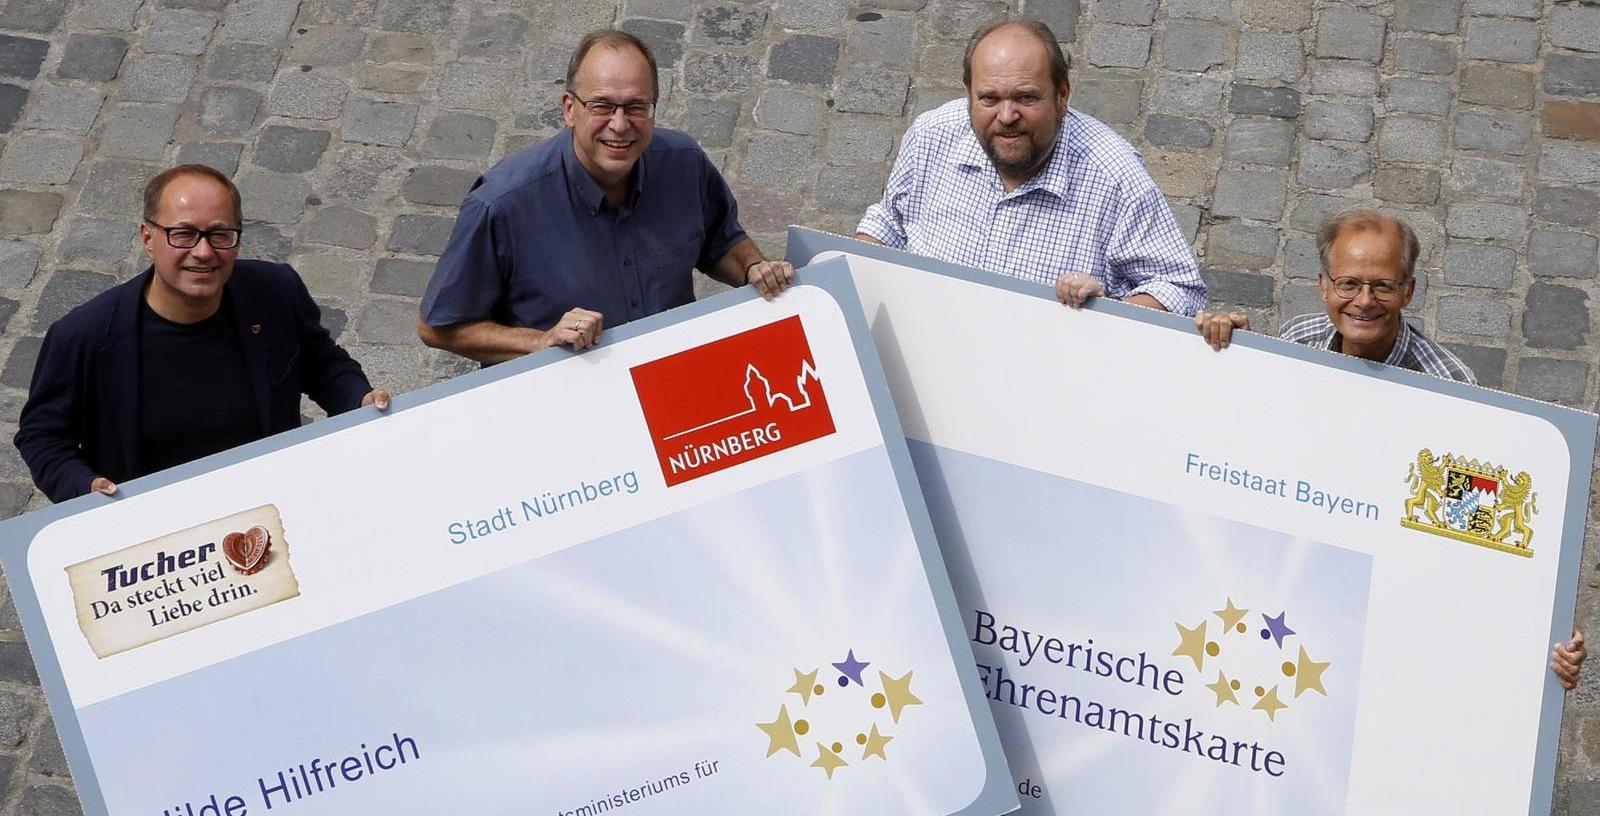 Bayerische Ehrenamtskarte: Bonus für engagierte Bürger